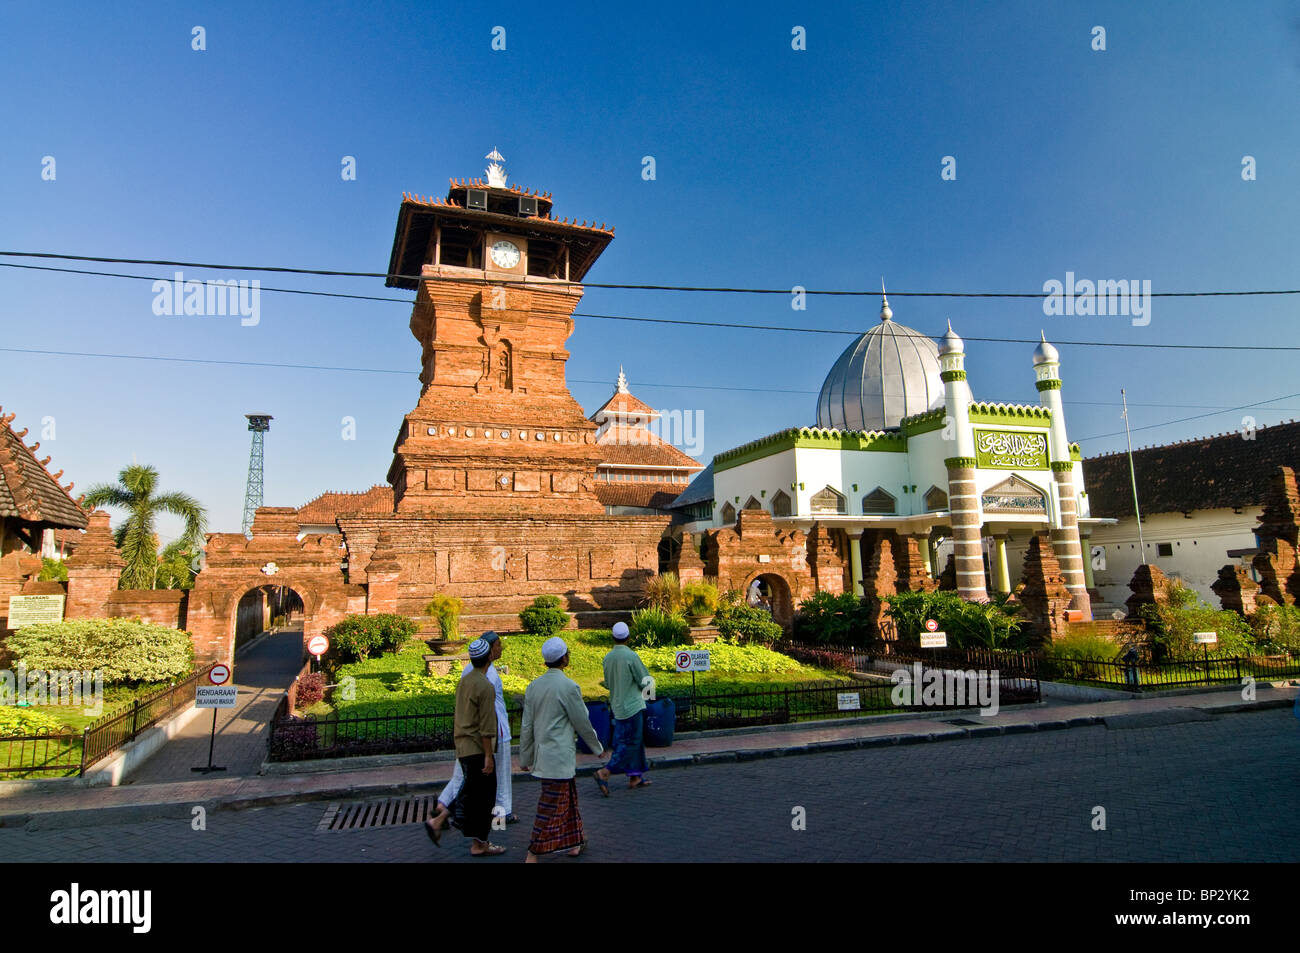 People walking goes to Menara Masjid Kudus for praying Stock Photo